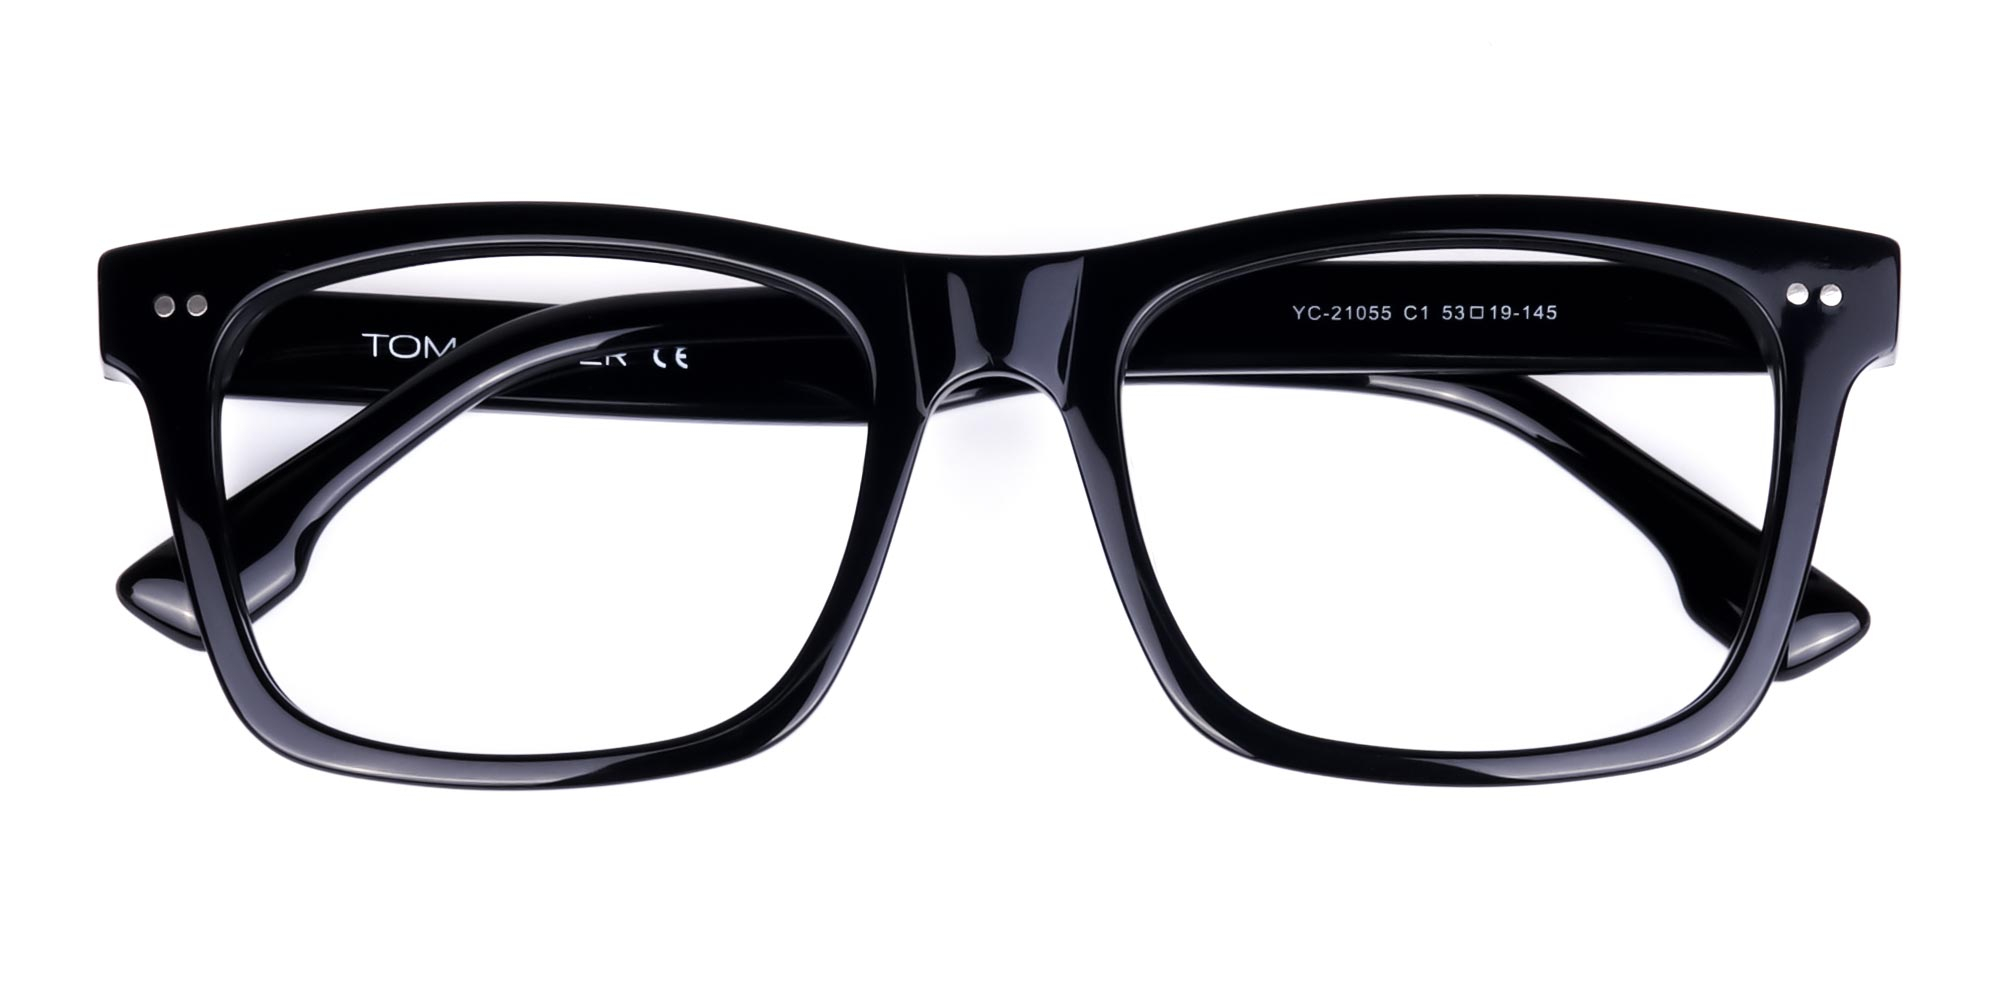 Black Square Glasses Frame-1